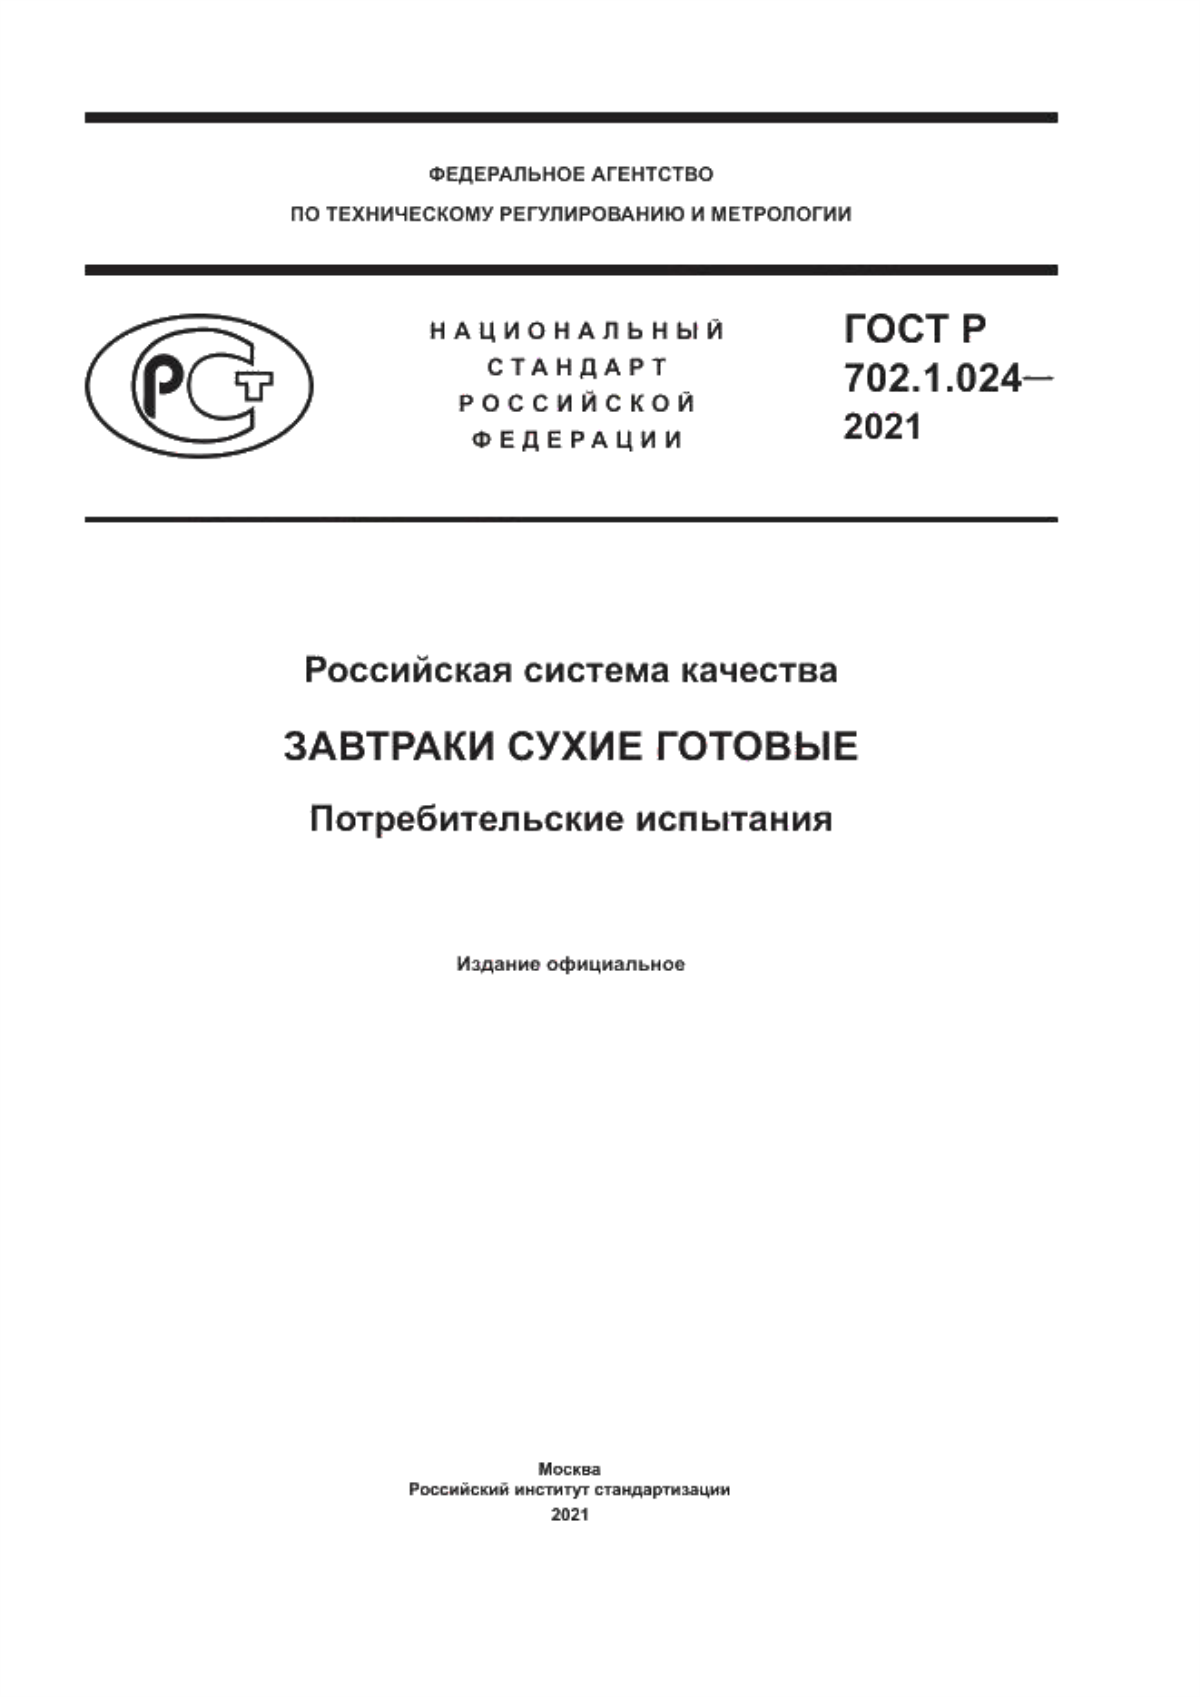 ГОСТ Р 702.1.024-2021 Российская система качества. Завтраки сухие готовые. Потребительские испытания